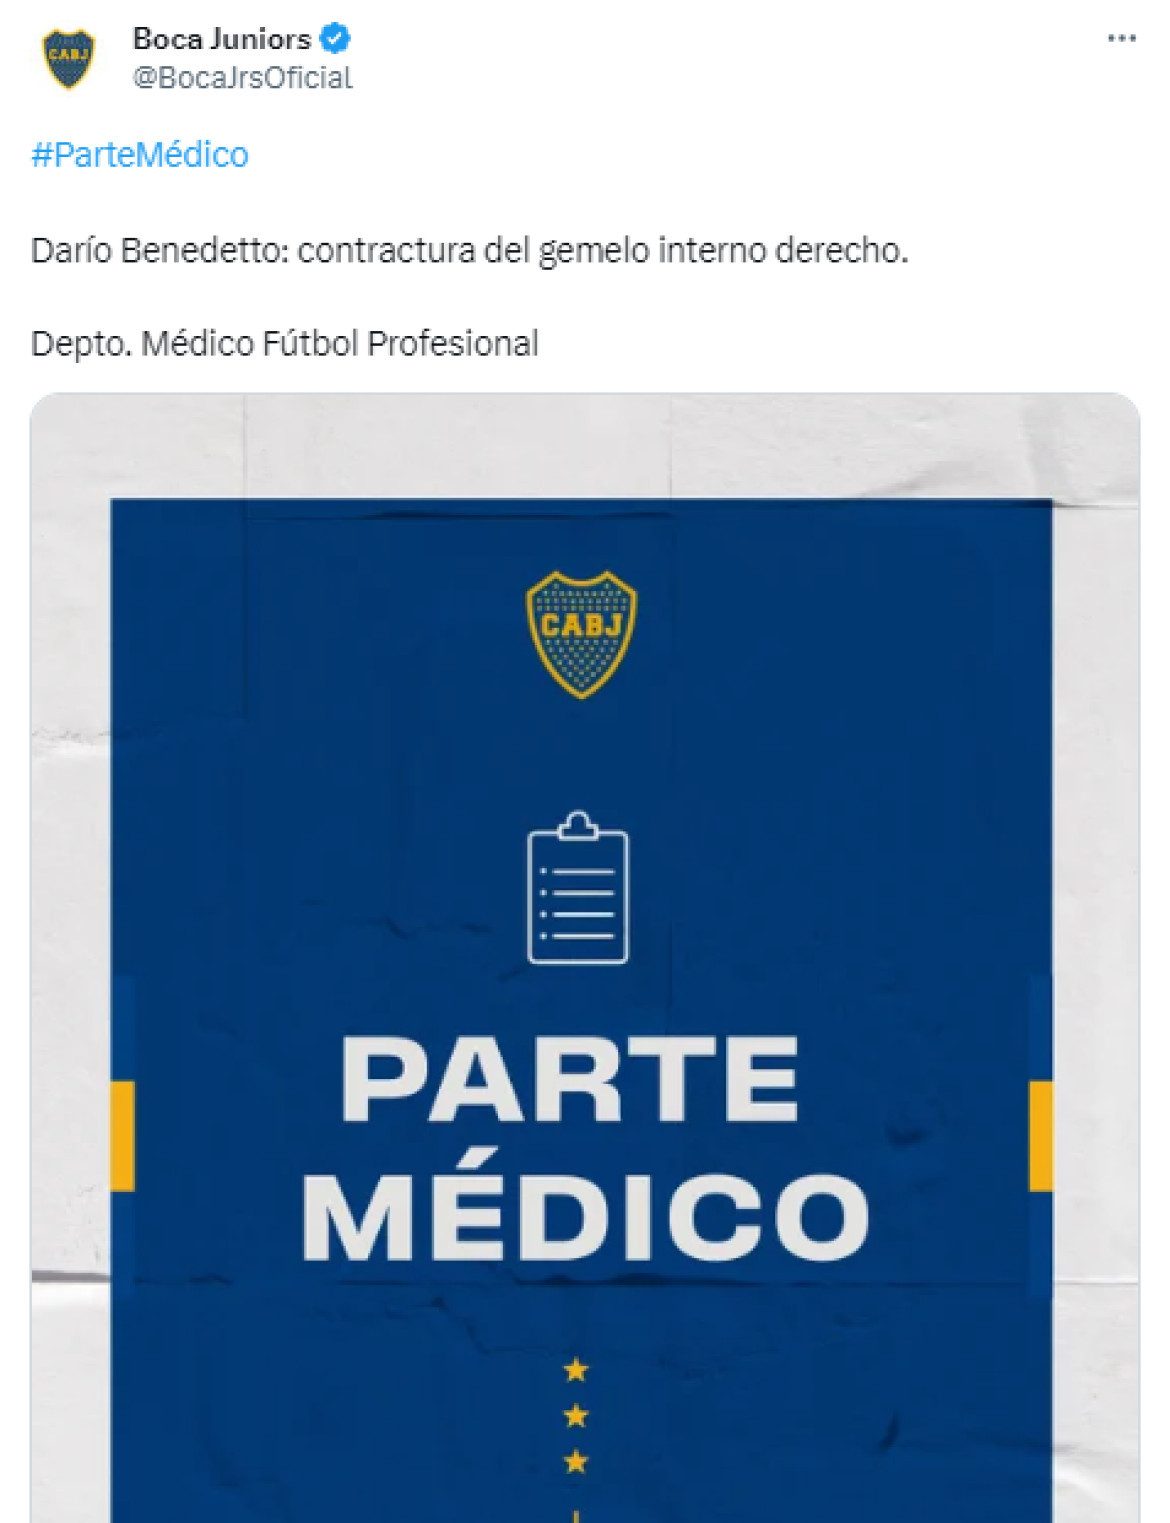 La lesión de Darío Benedetto. Foto: Captura de pantalla Twitter.